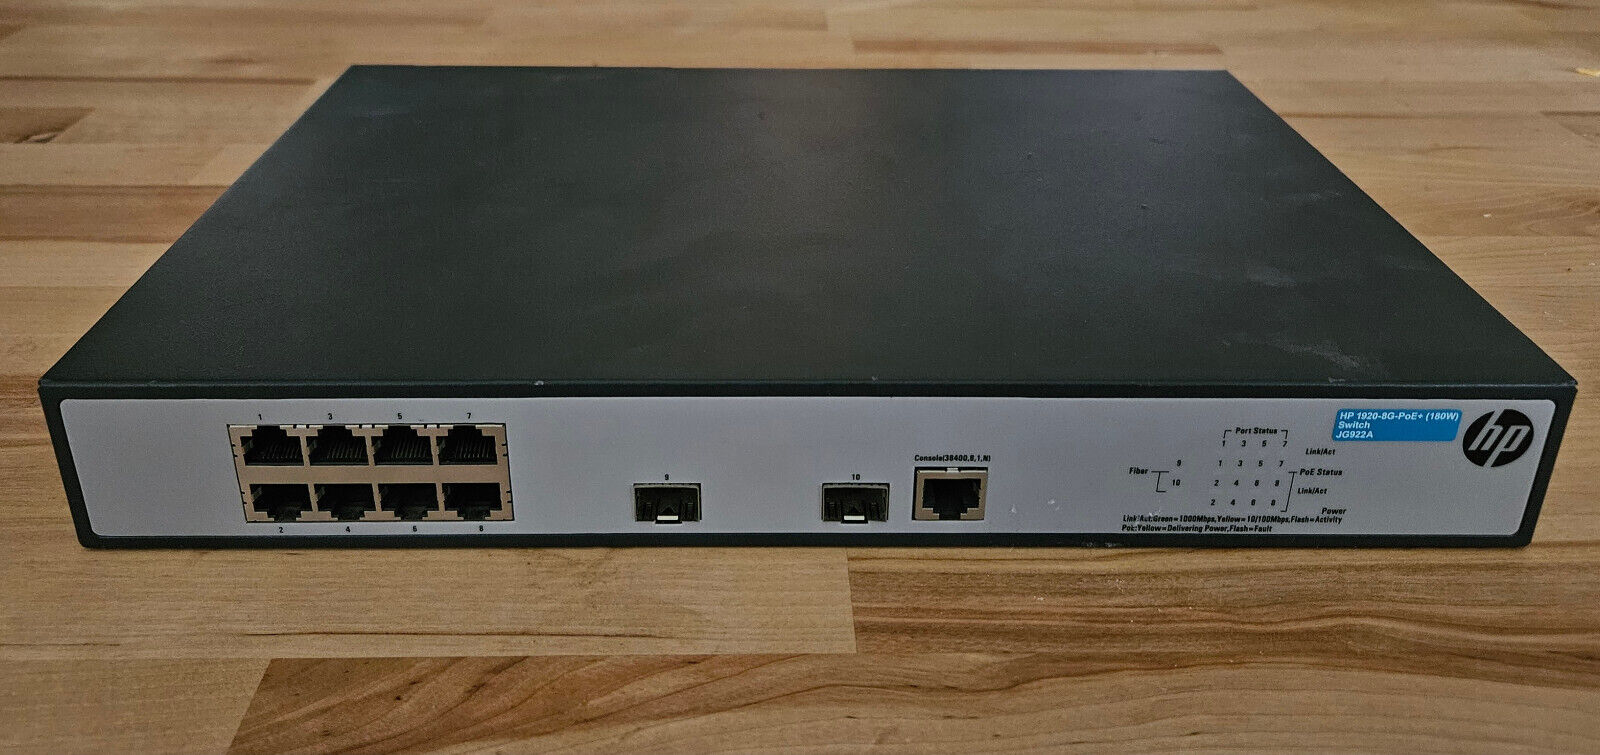 HP 1920-8g-poe+ Switch 8 Ports Managed Desktop JG922A